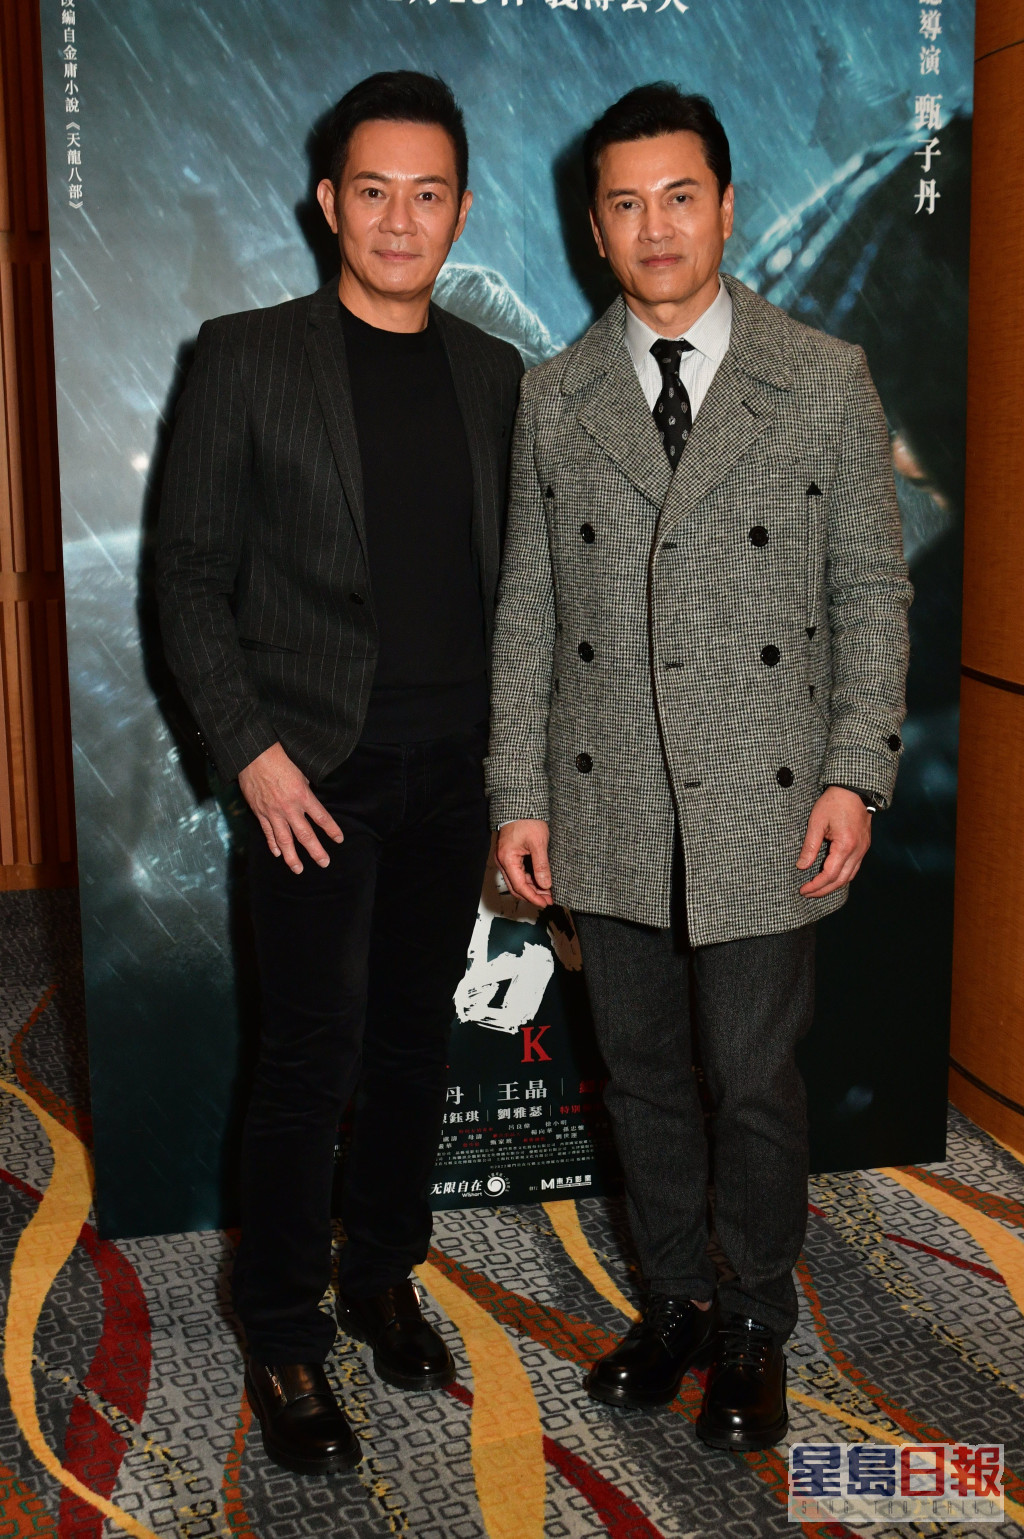 张兆辉与吕良伟曾出席电影《天龙八部之乔峰传》慈善首映。